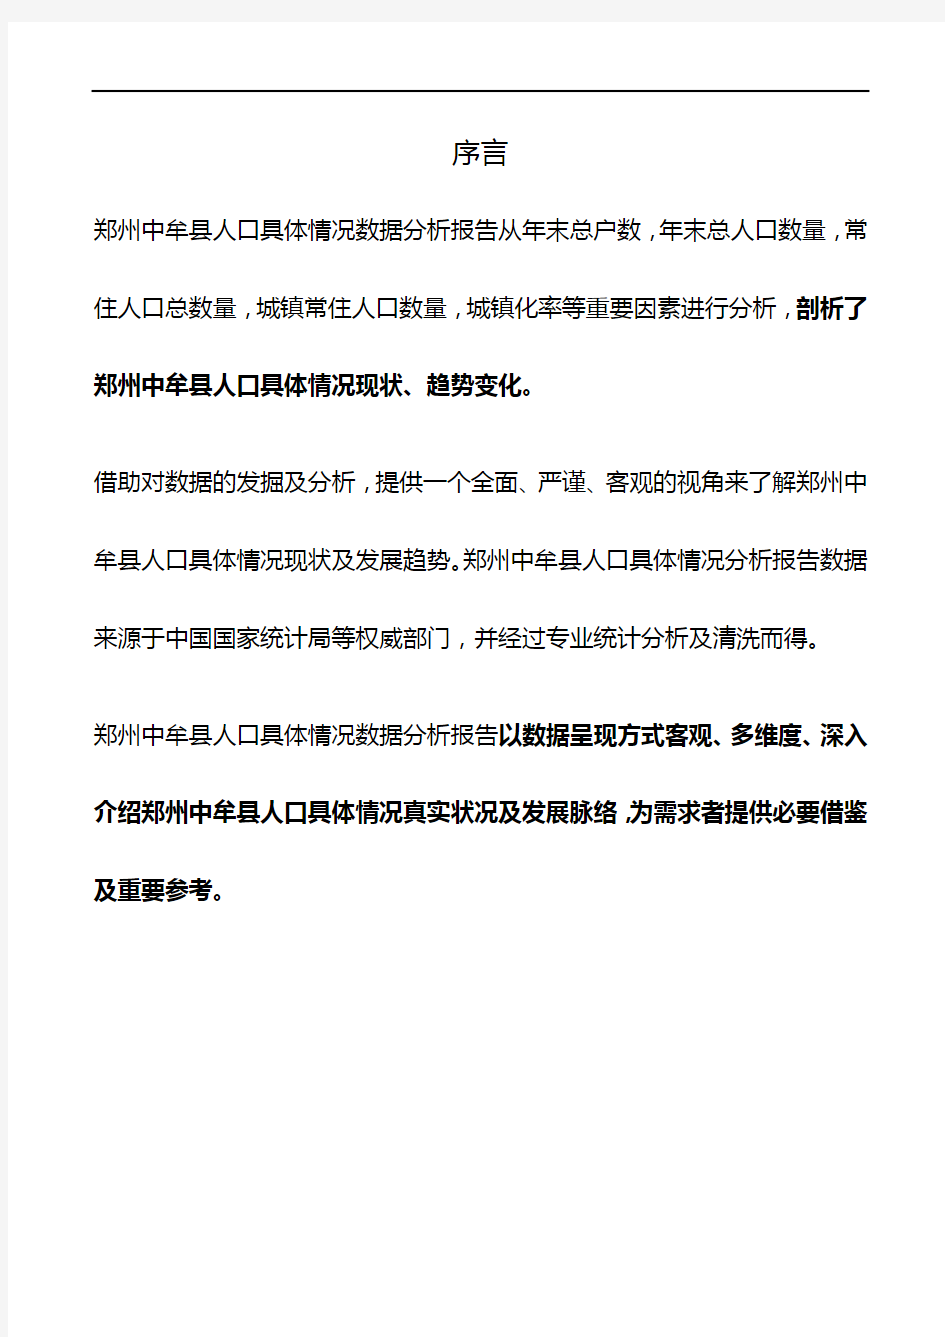 河南省郑州中牟县人口具体情况数据分析报告2019版